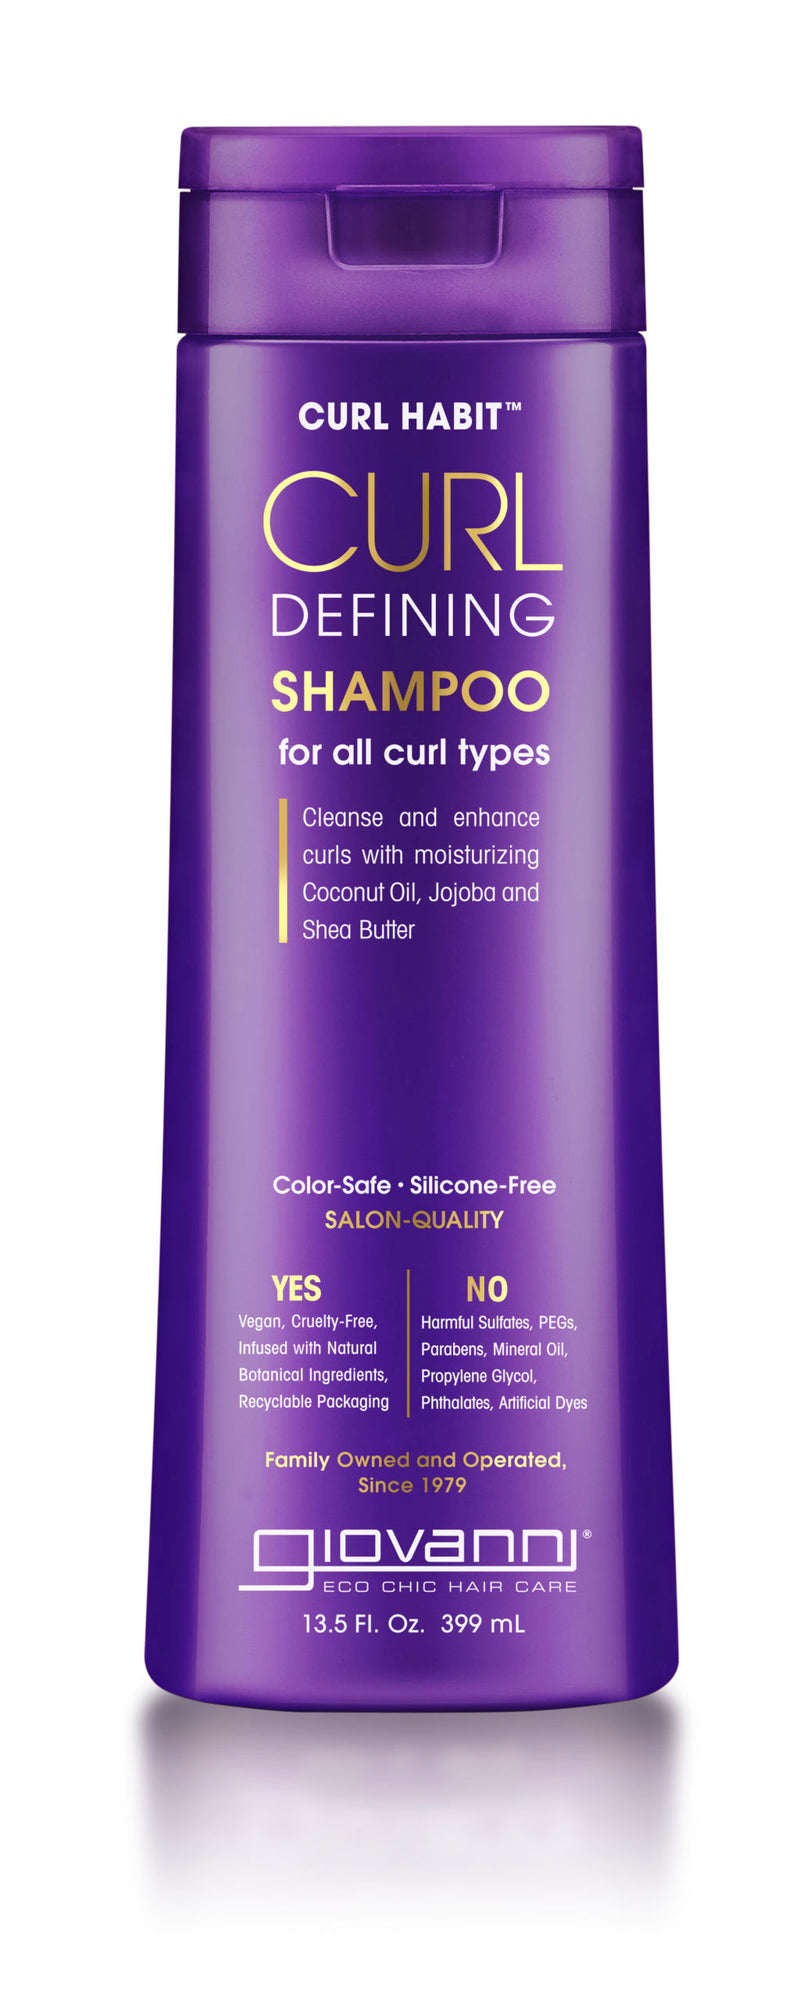 Curl Habit Curl Defining Shampoo